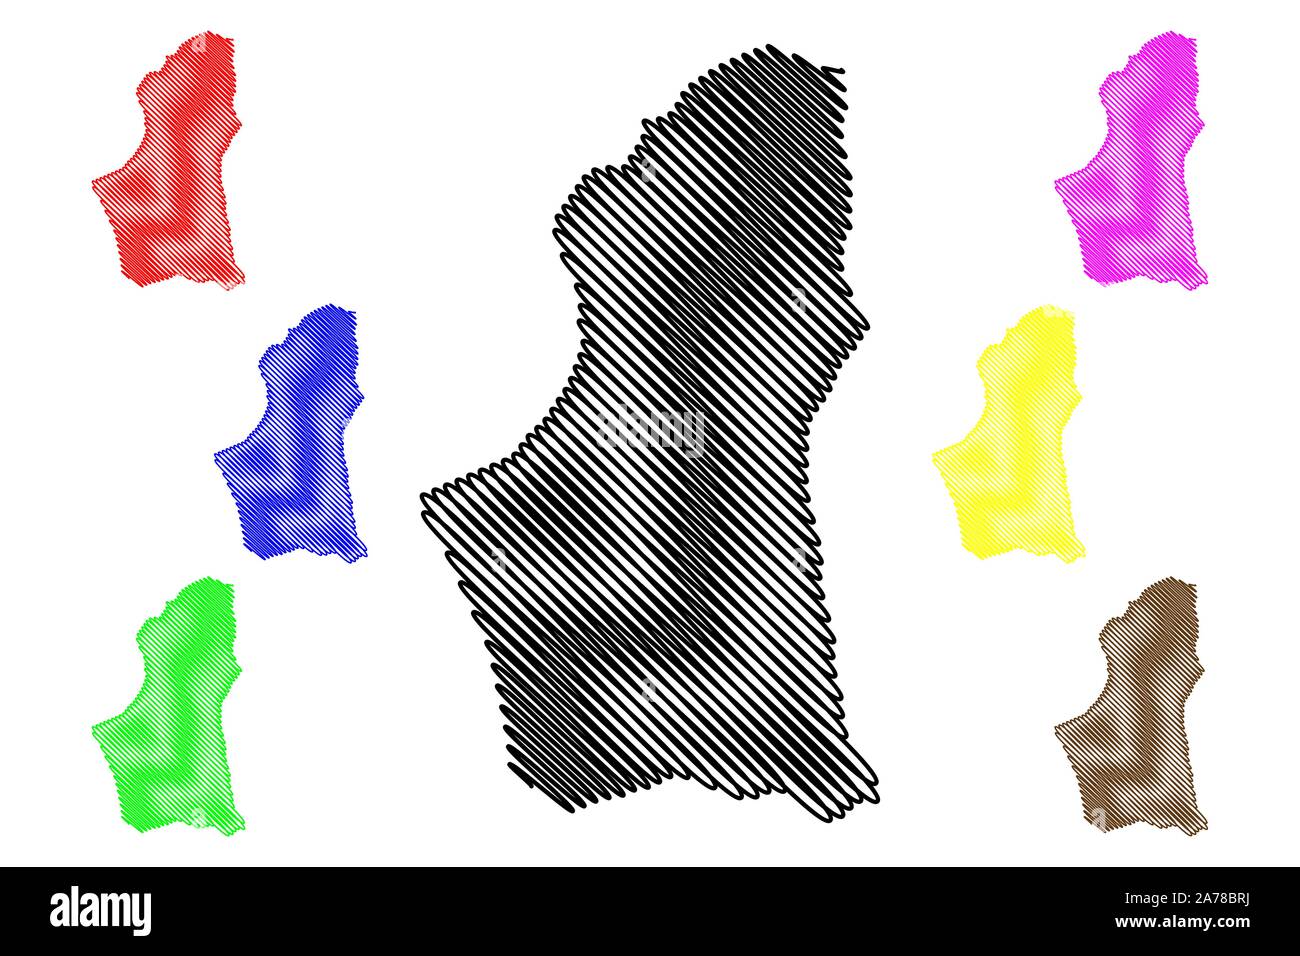 Bezirk (Bezirke nalut Libyen, Libyen, Tripolitanien) Karte Vektor-illustration, kritzeln Skizze Nalut Karte Stock Vektor